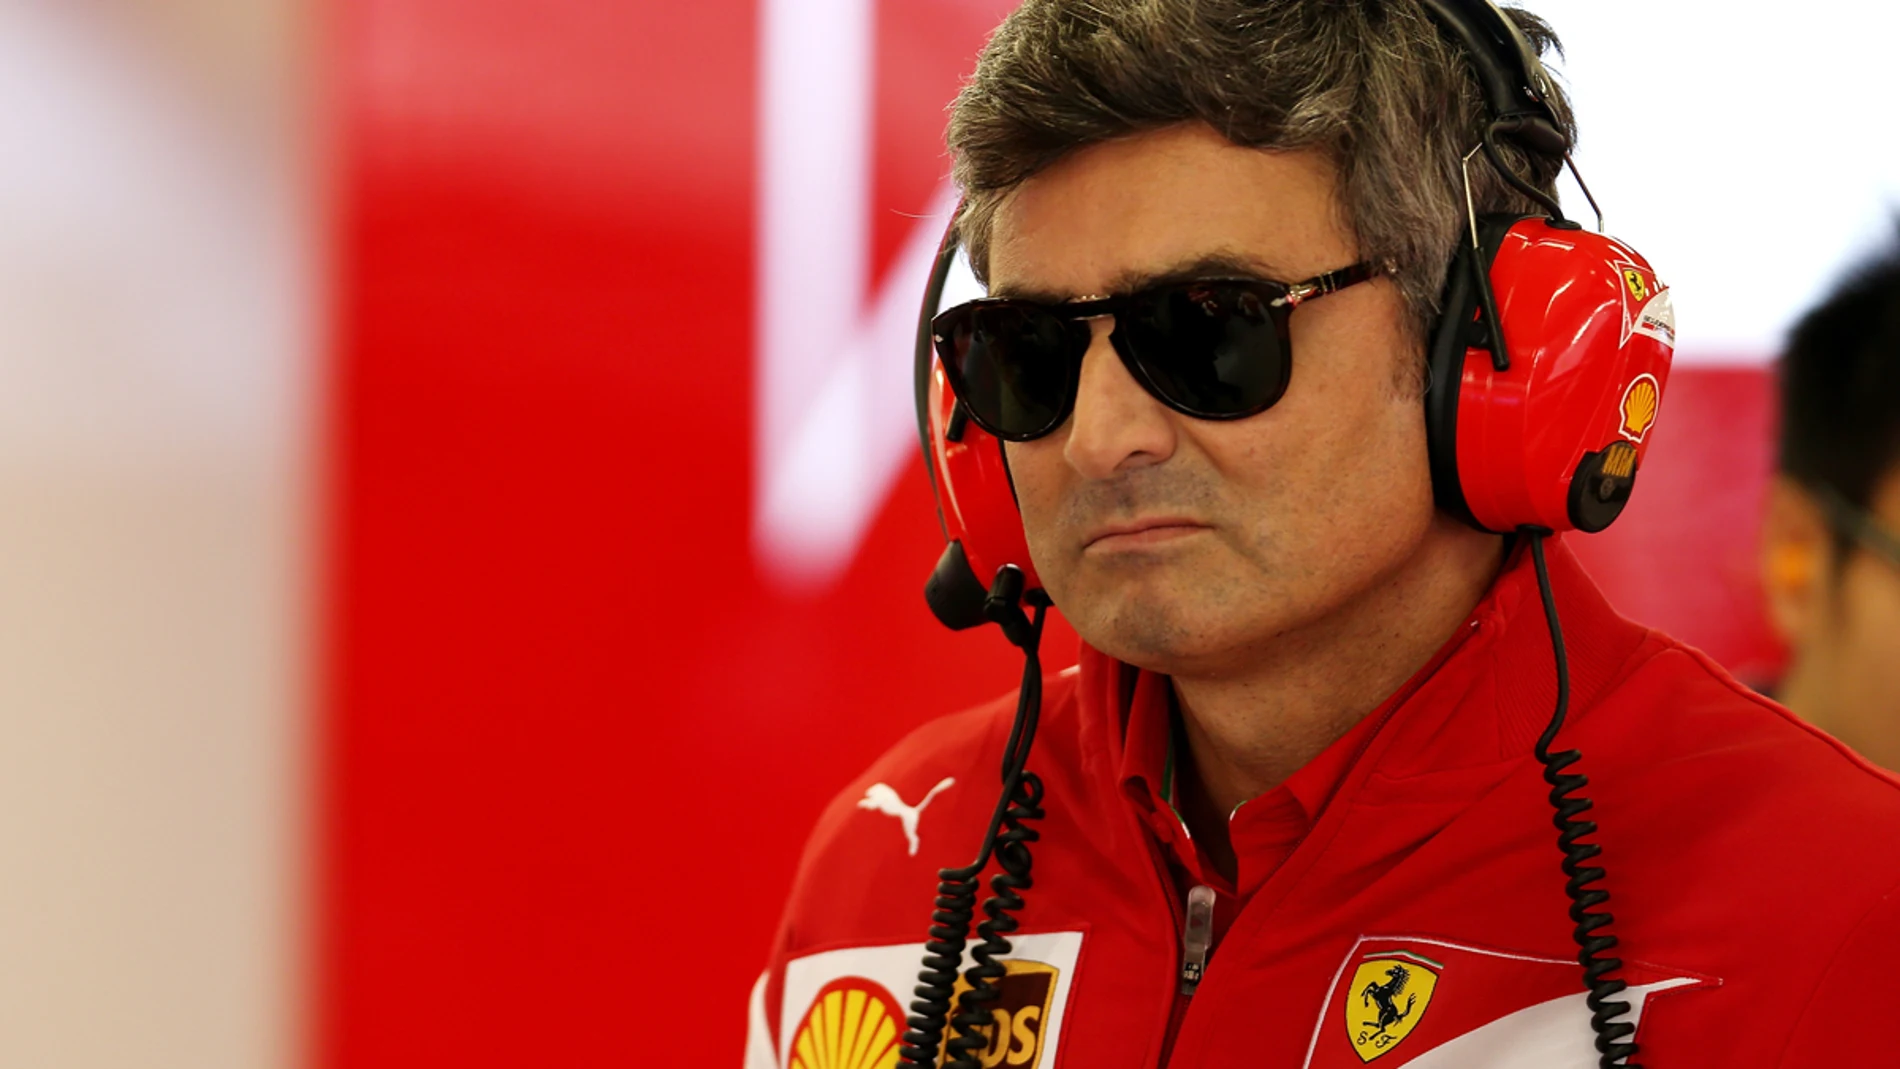 Marco Mattiacci, en el box de Ferrari